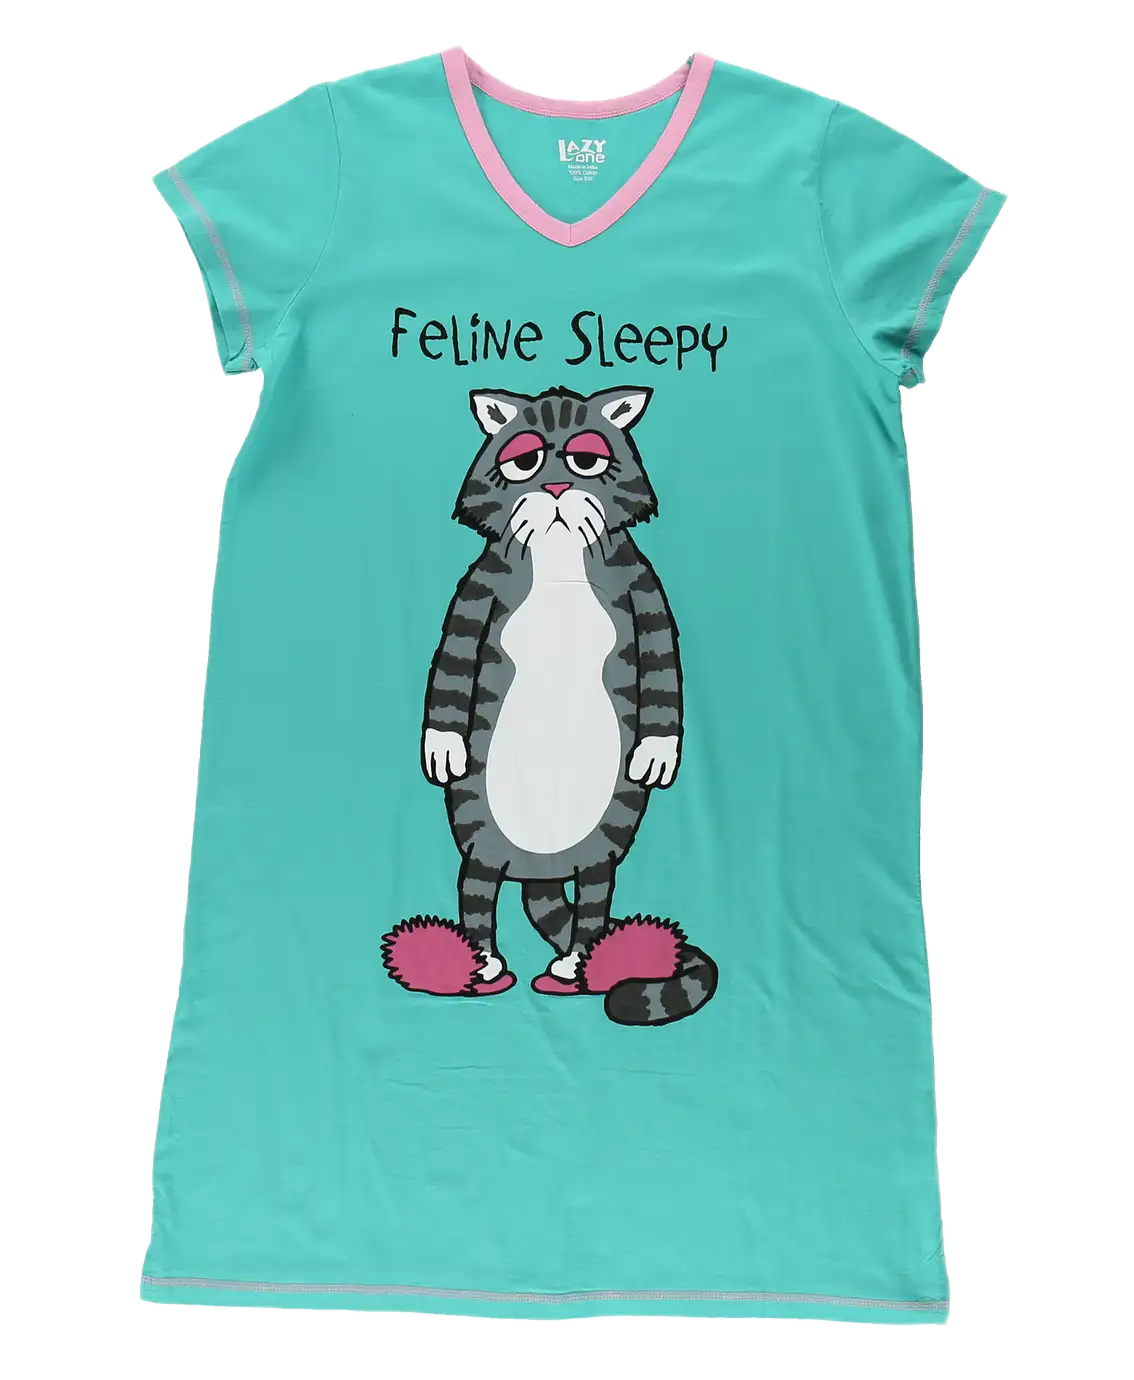 Feline Sleepy Sleep Shirt - S/M